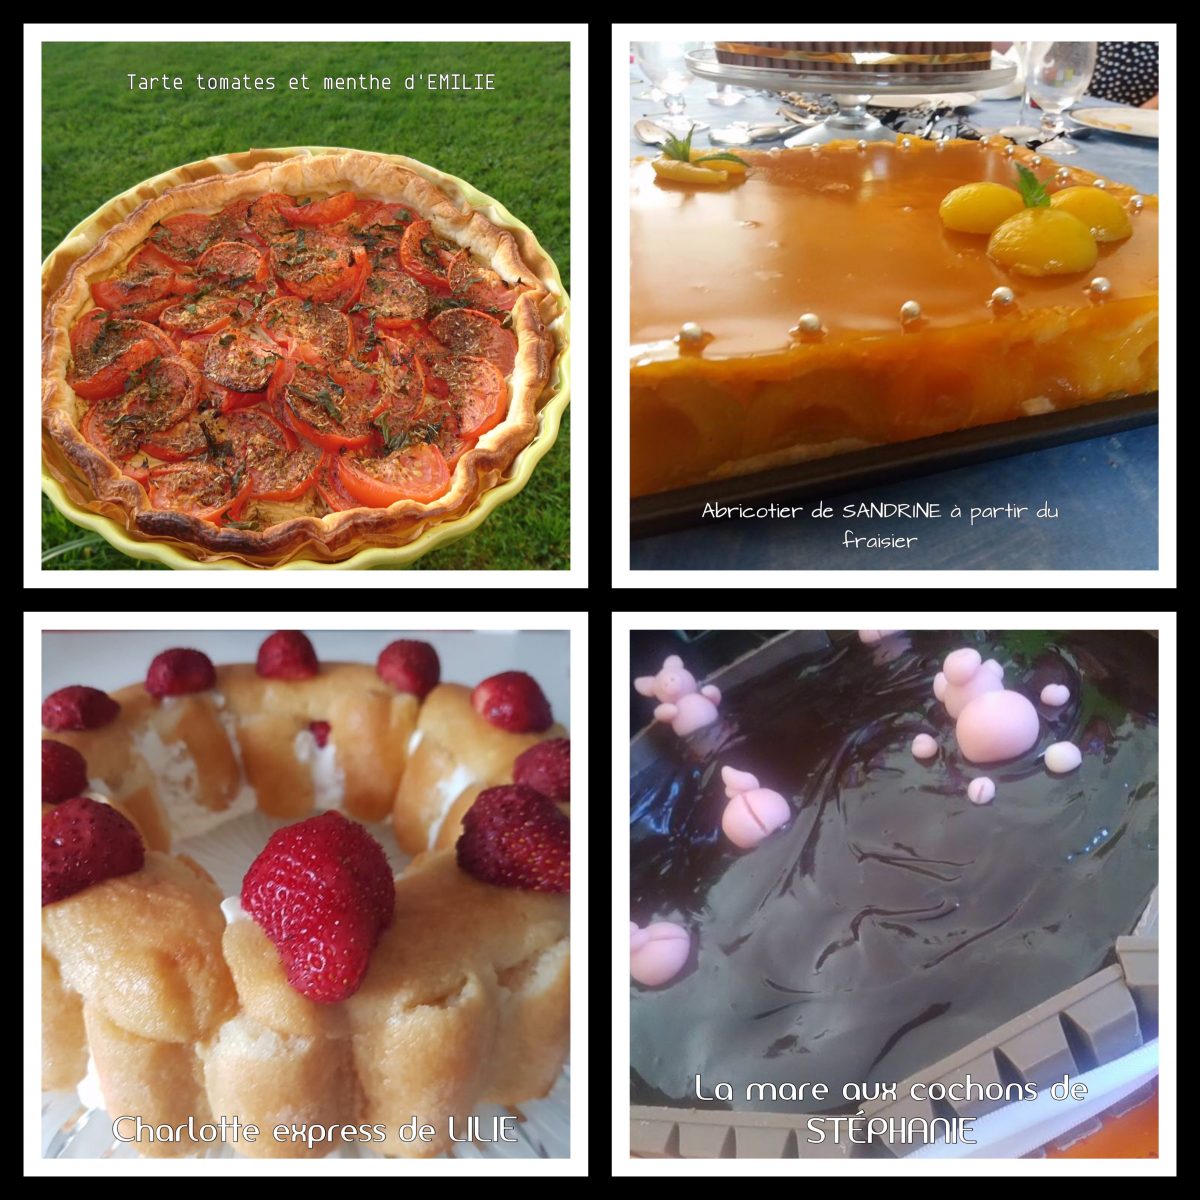 Mise à l’honneur n°2 de mai : tarte tomate, abricotier, Charlotte aux fraises express, mare aux cochons Thermomix ou sans